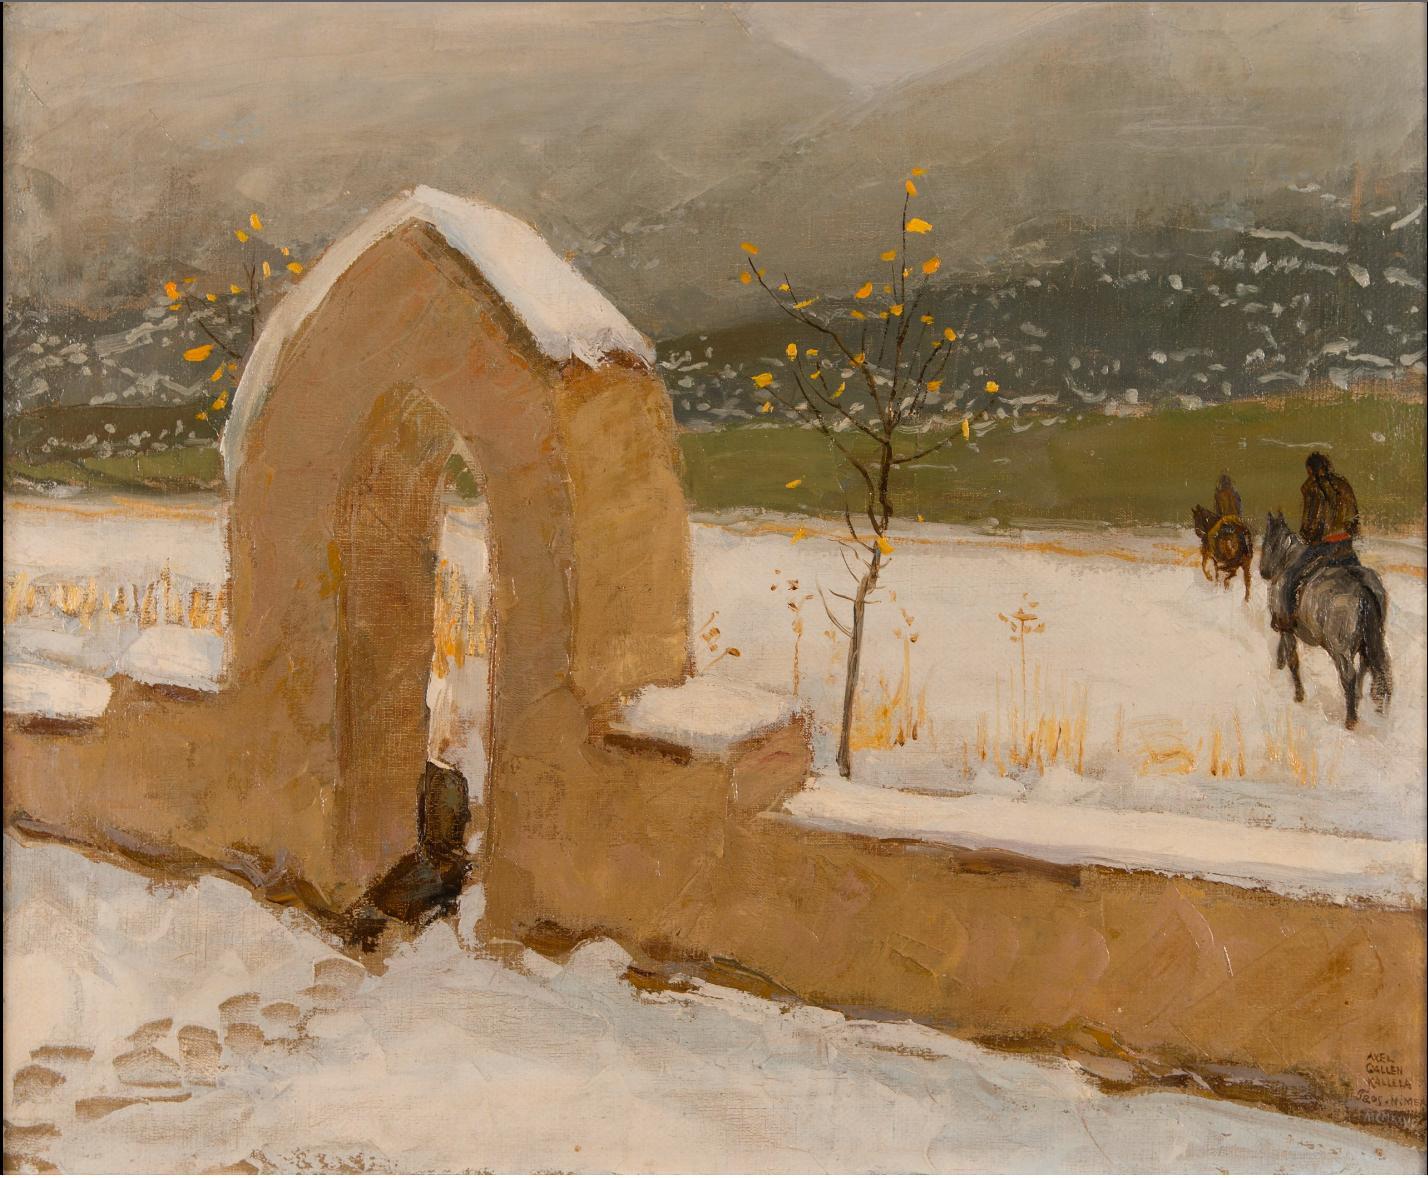 Taos, 1925, Fede Galizia